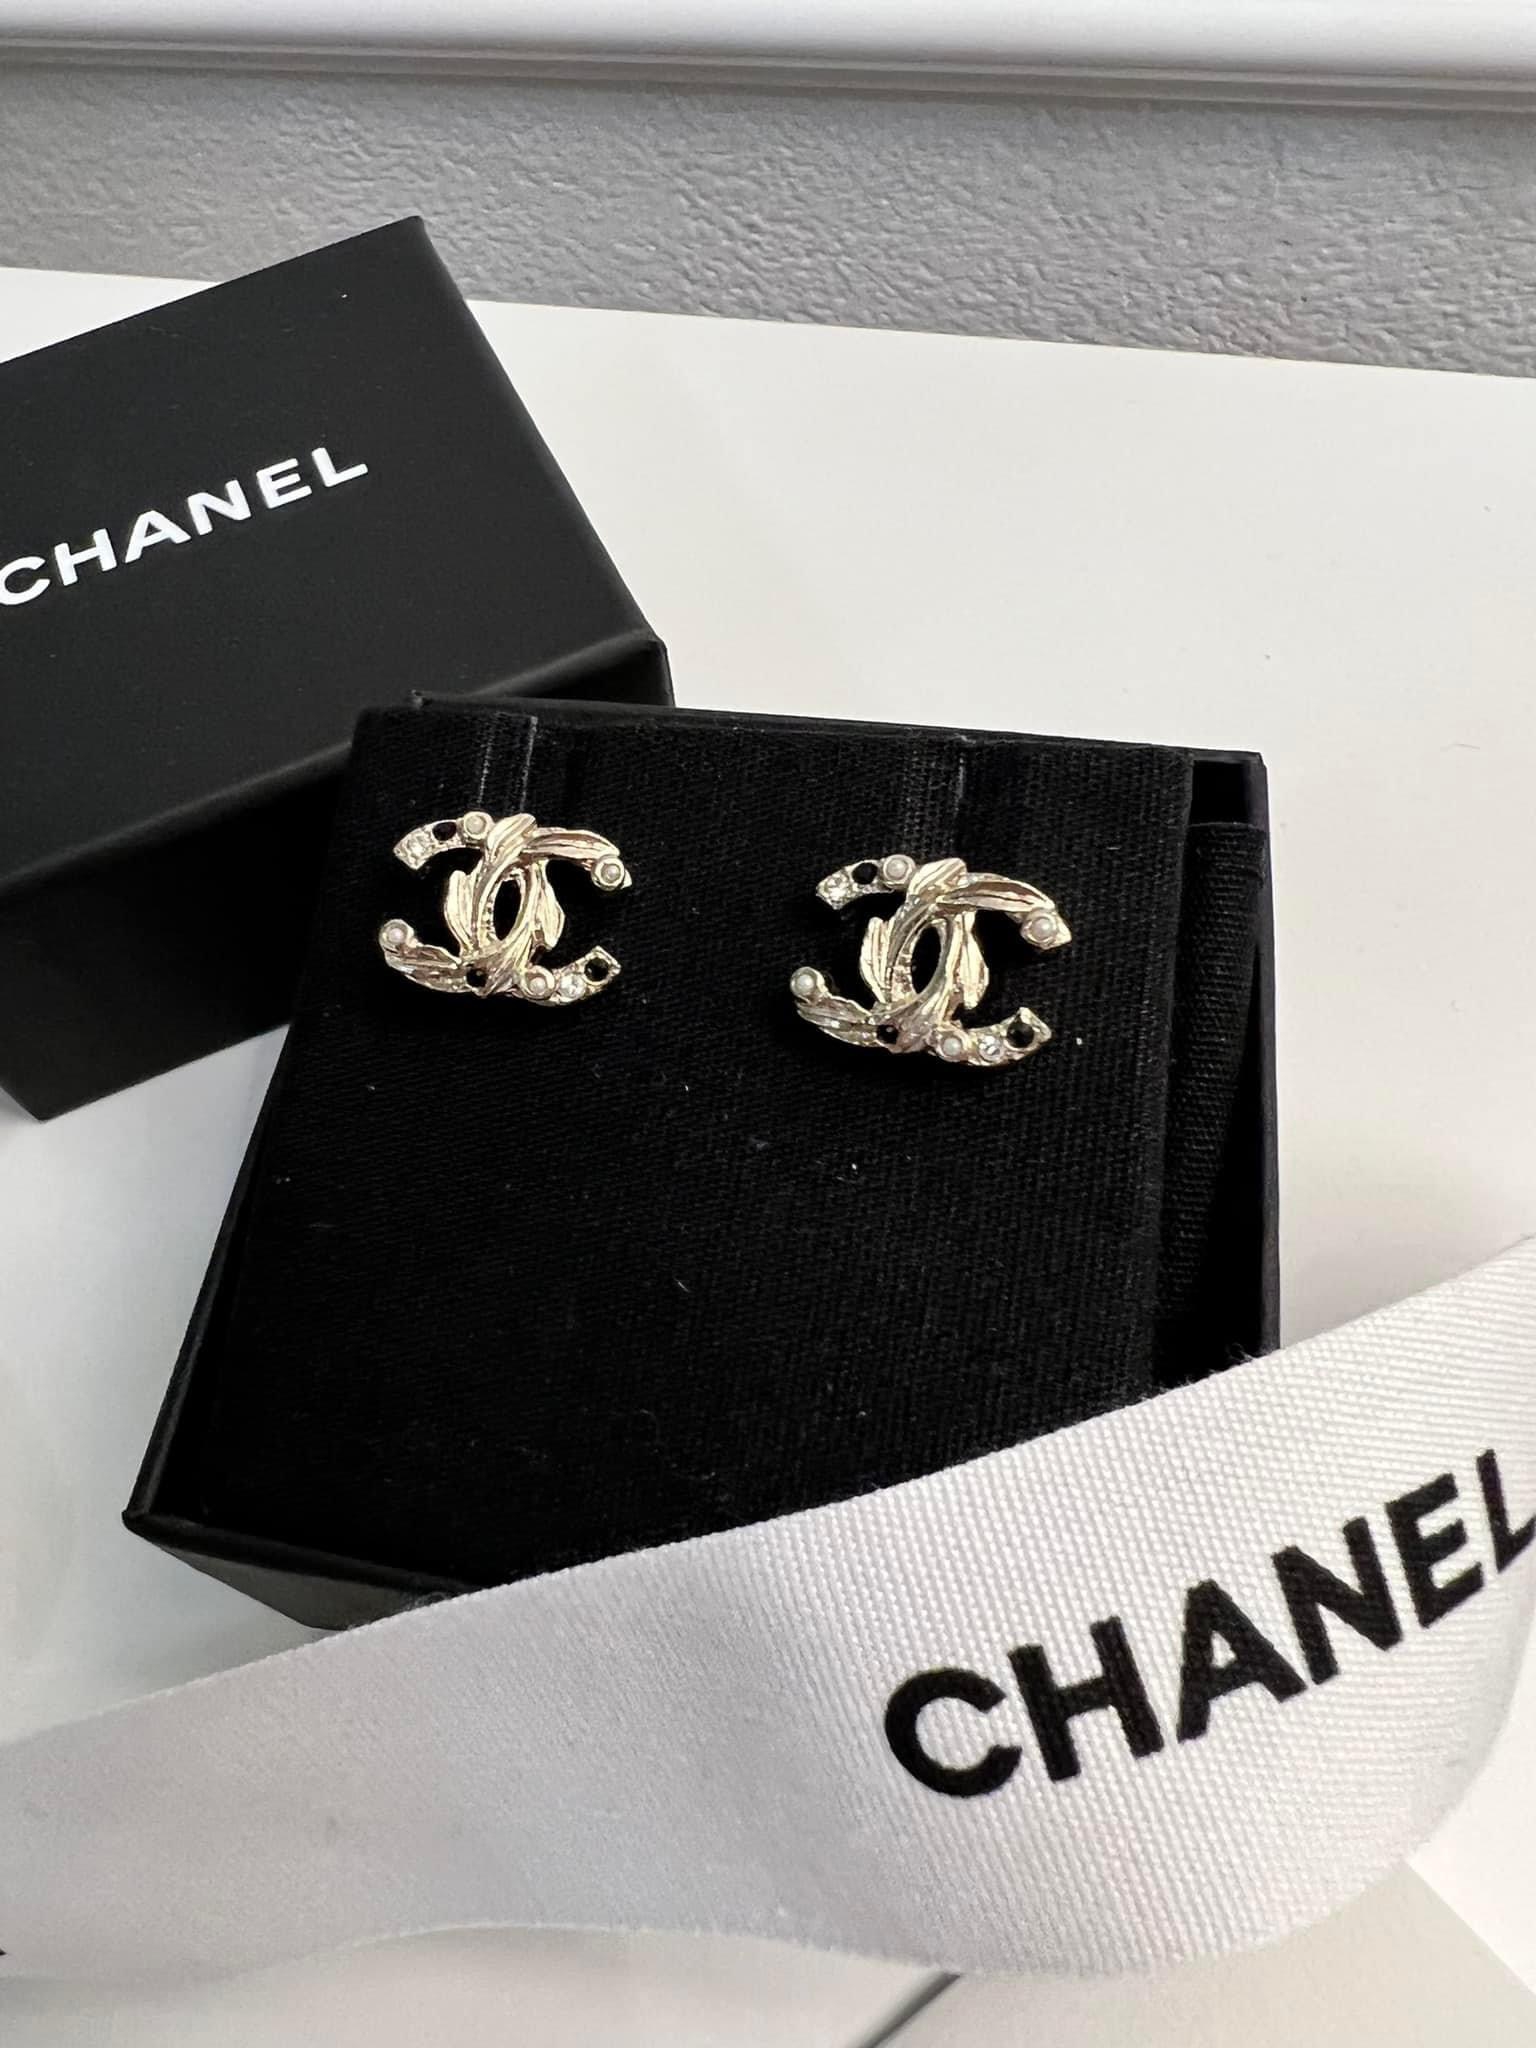 Chanel Nowe kolczyki Chanel klasyczne mini CC kolor złoty z kryształkami, perełkami i kamieniami koloru czarnego. Nowa, obecna kolekcja w Chanel. Obecnie najmniejszy, Bardzo poszukiwany model Wymiary 1,2 cm x 1,1   Komplet nowy  – rachunek, pudełko, kamelia i opakowanie prezentowe ze wstążkami. Idealne na prezent